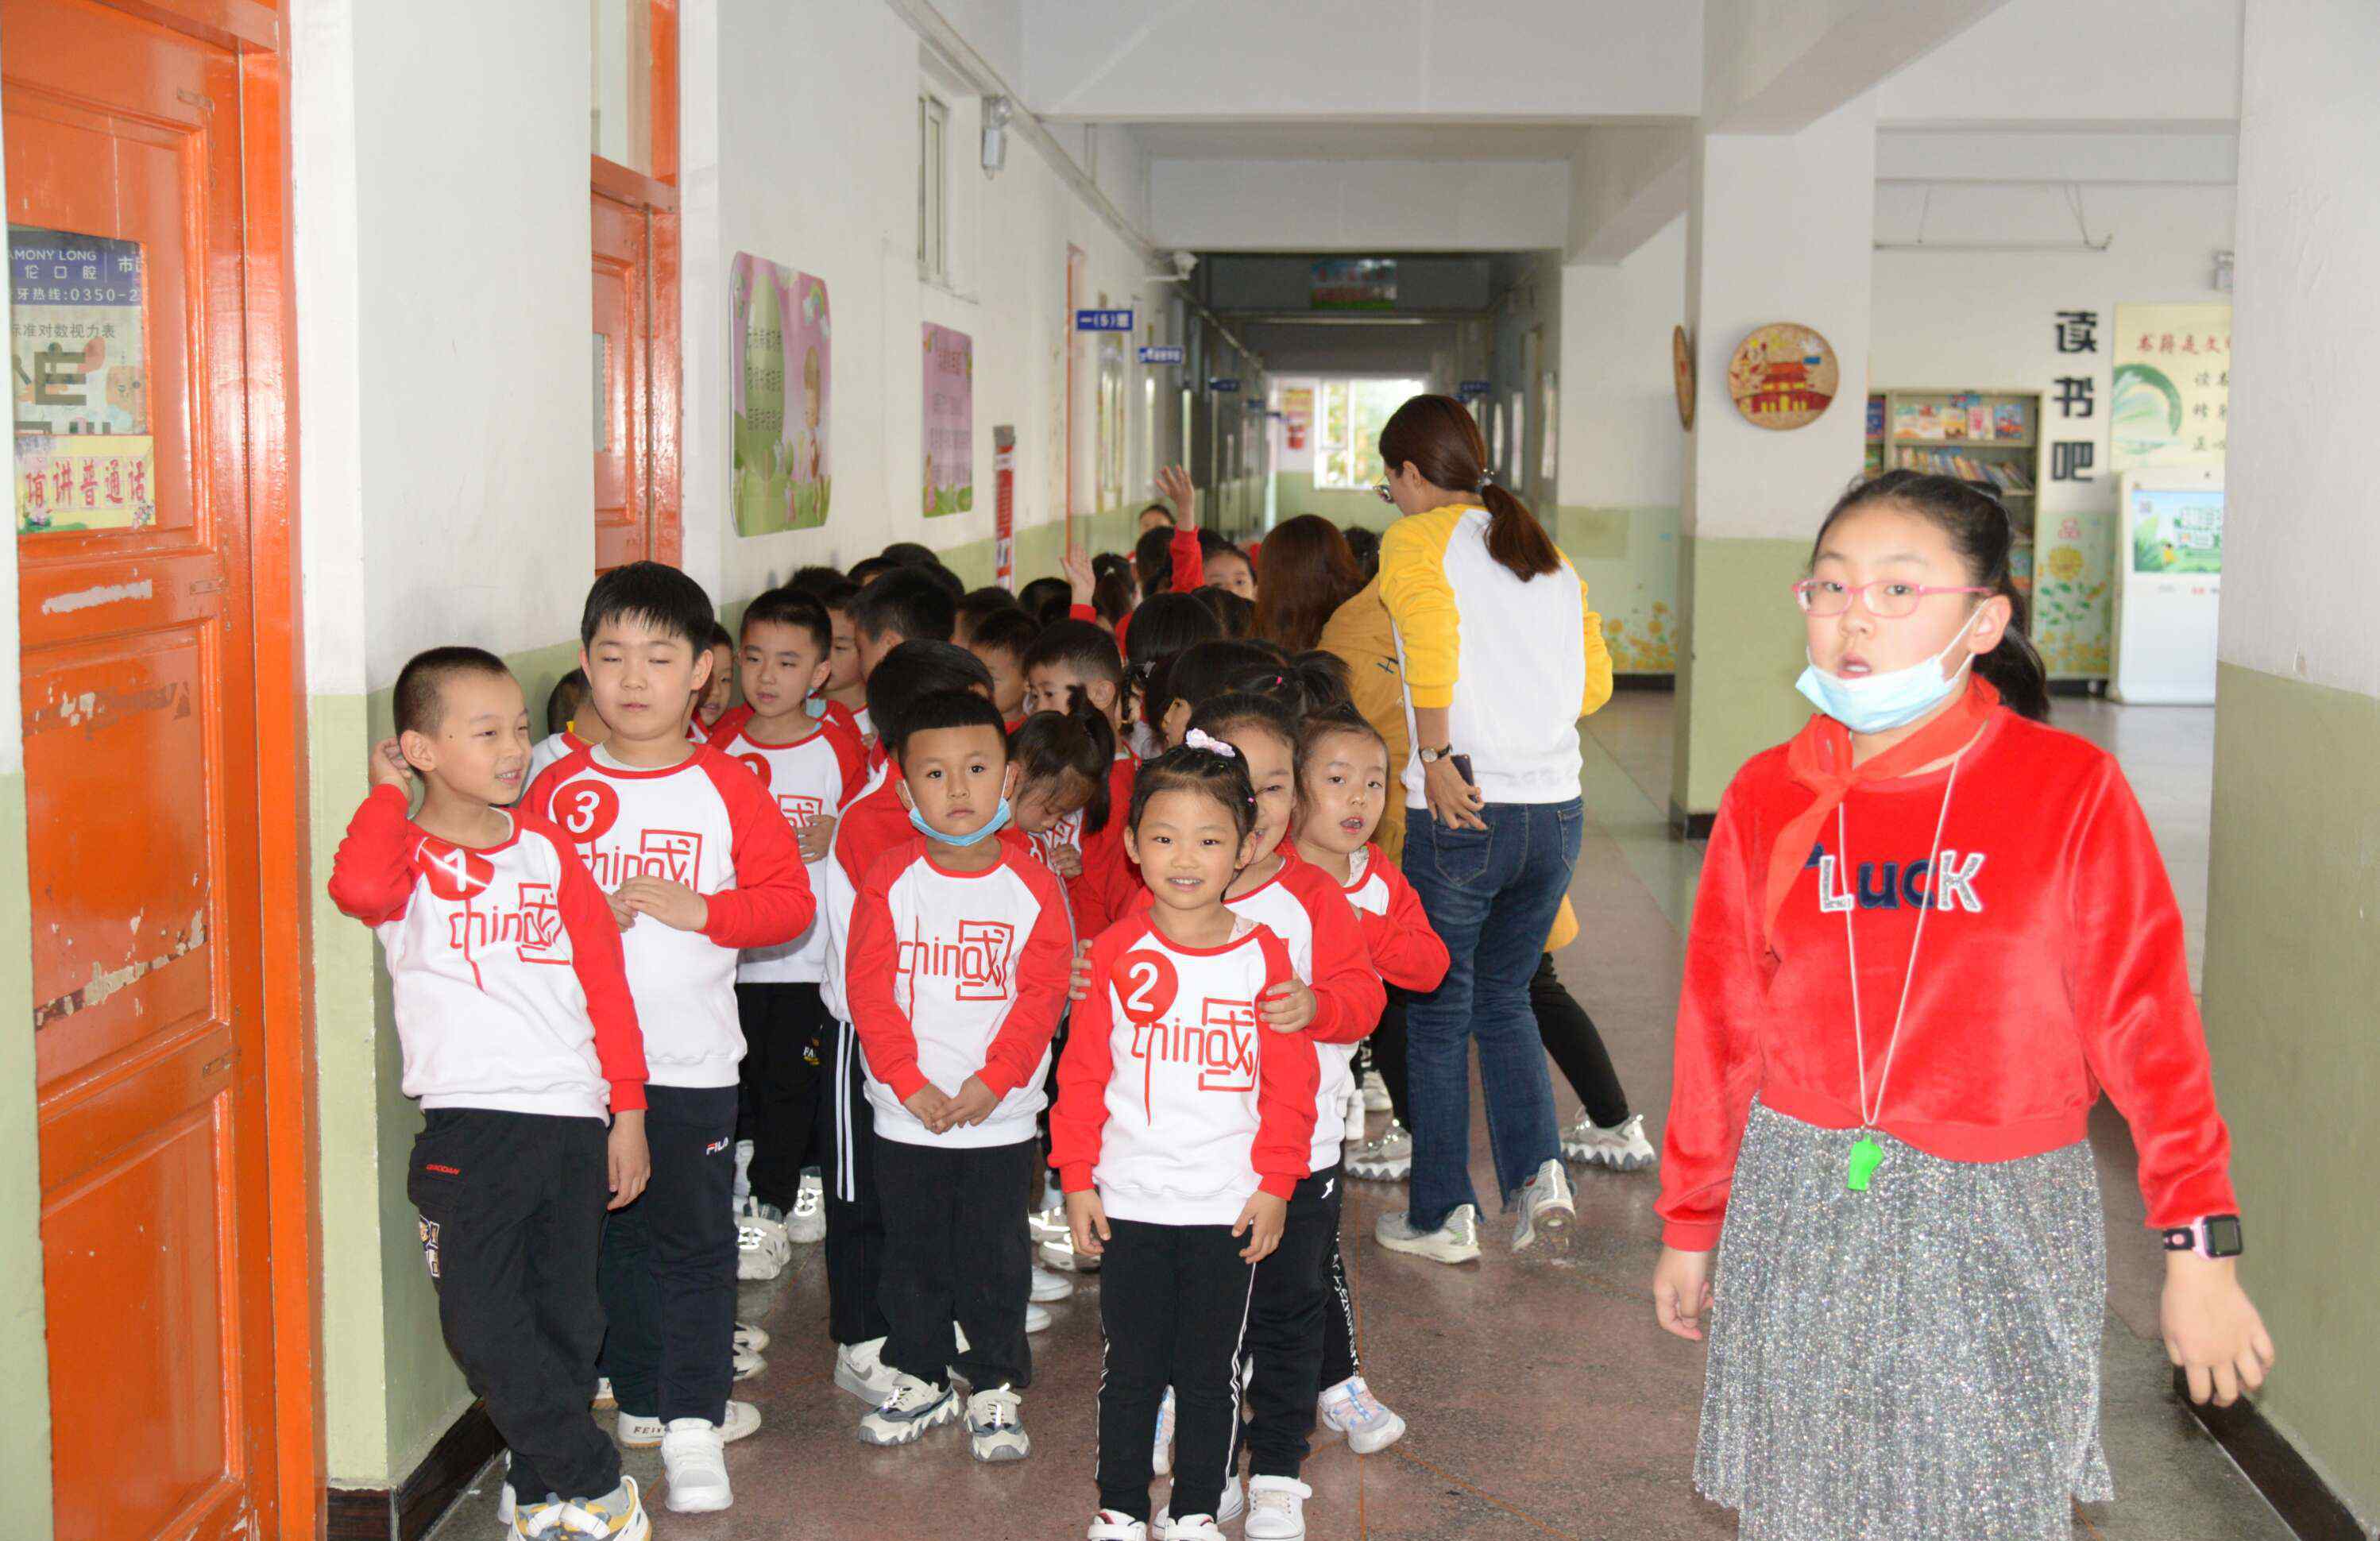 忻州市第二实验小学 忻州市第二实验小学一年级举办“共担风雨、爱赢未来”亲子运动会